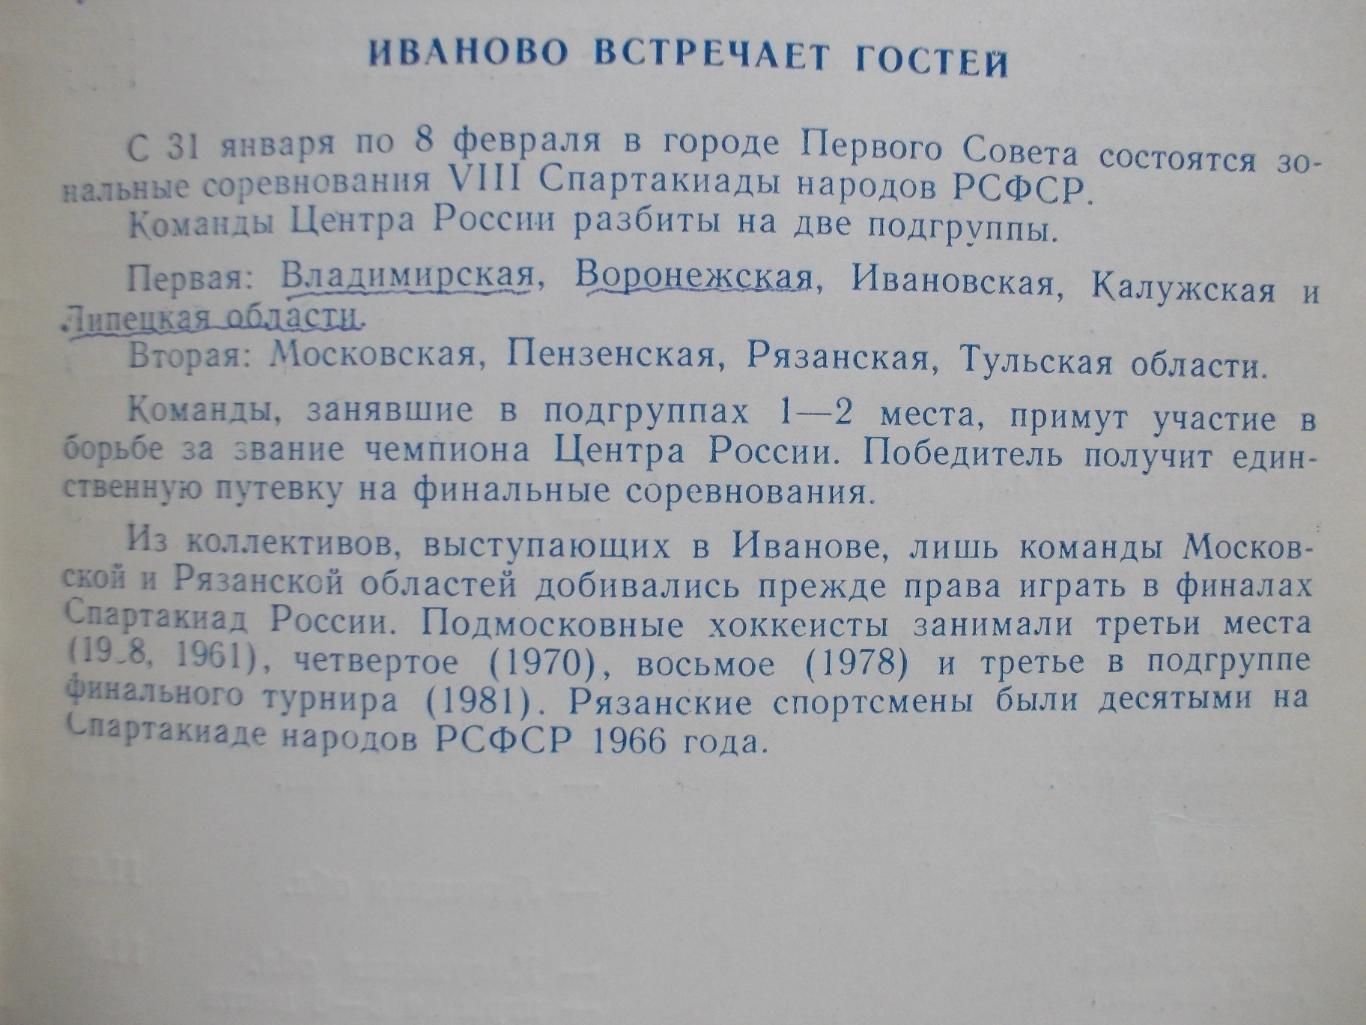 Хоккей с мячом. 8-я спартакиада народов РСФСР, Иваново, 1985 год. 1